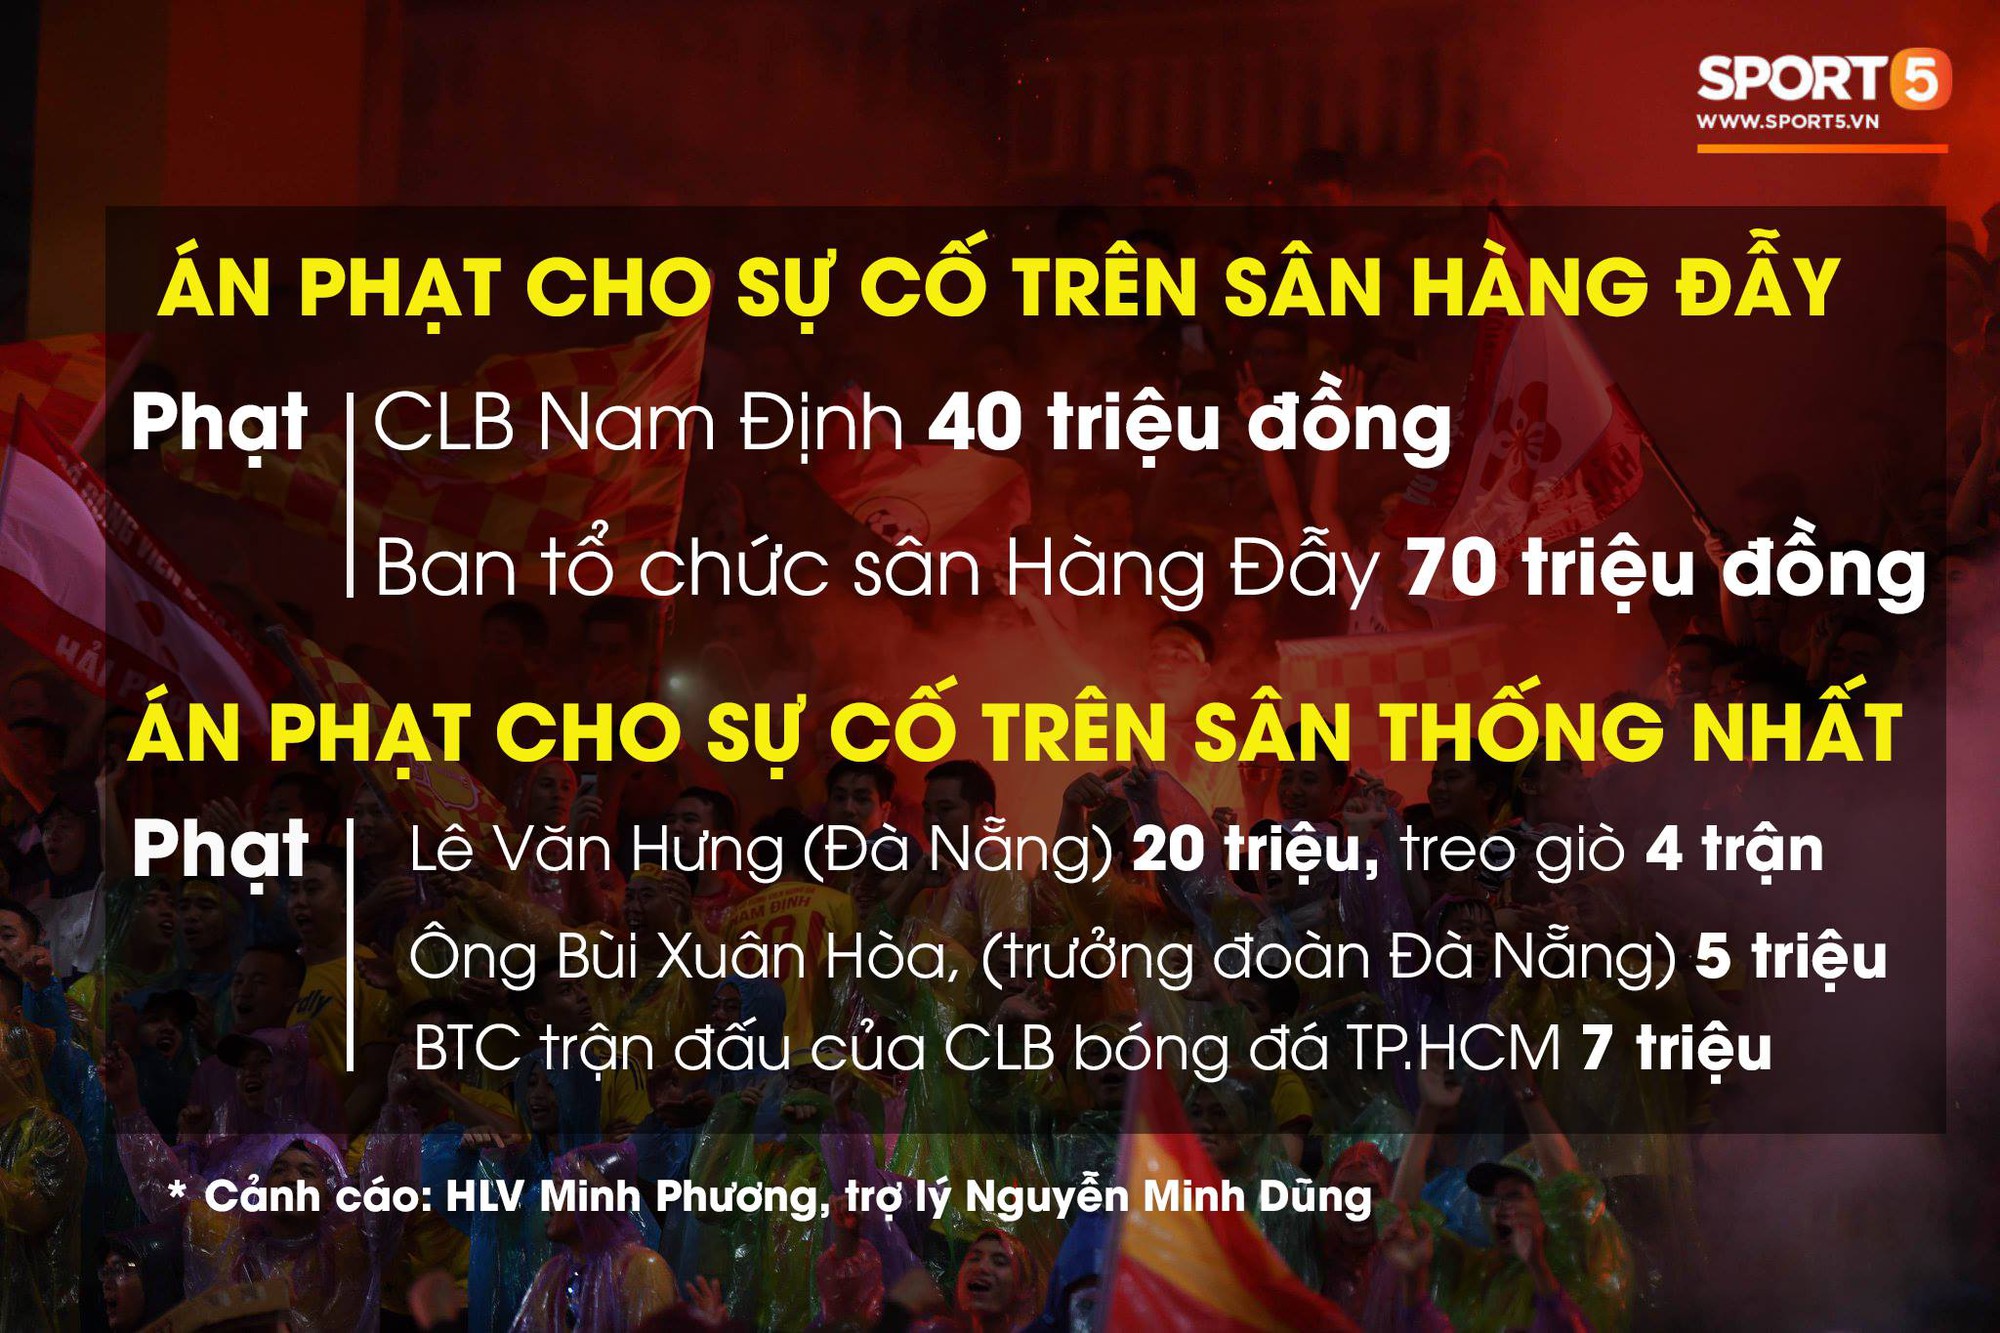 Sân Hàng Đẫy bị phạt 70 triệu, CLB Nam Định lãnh án 40 triệu vì CĐV đốt pháo sáng - Ảnh 1.